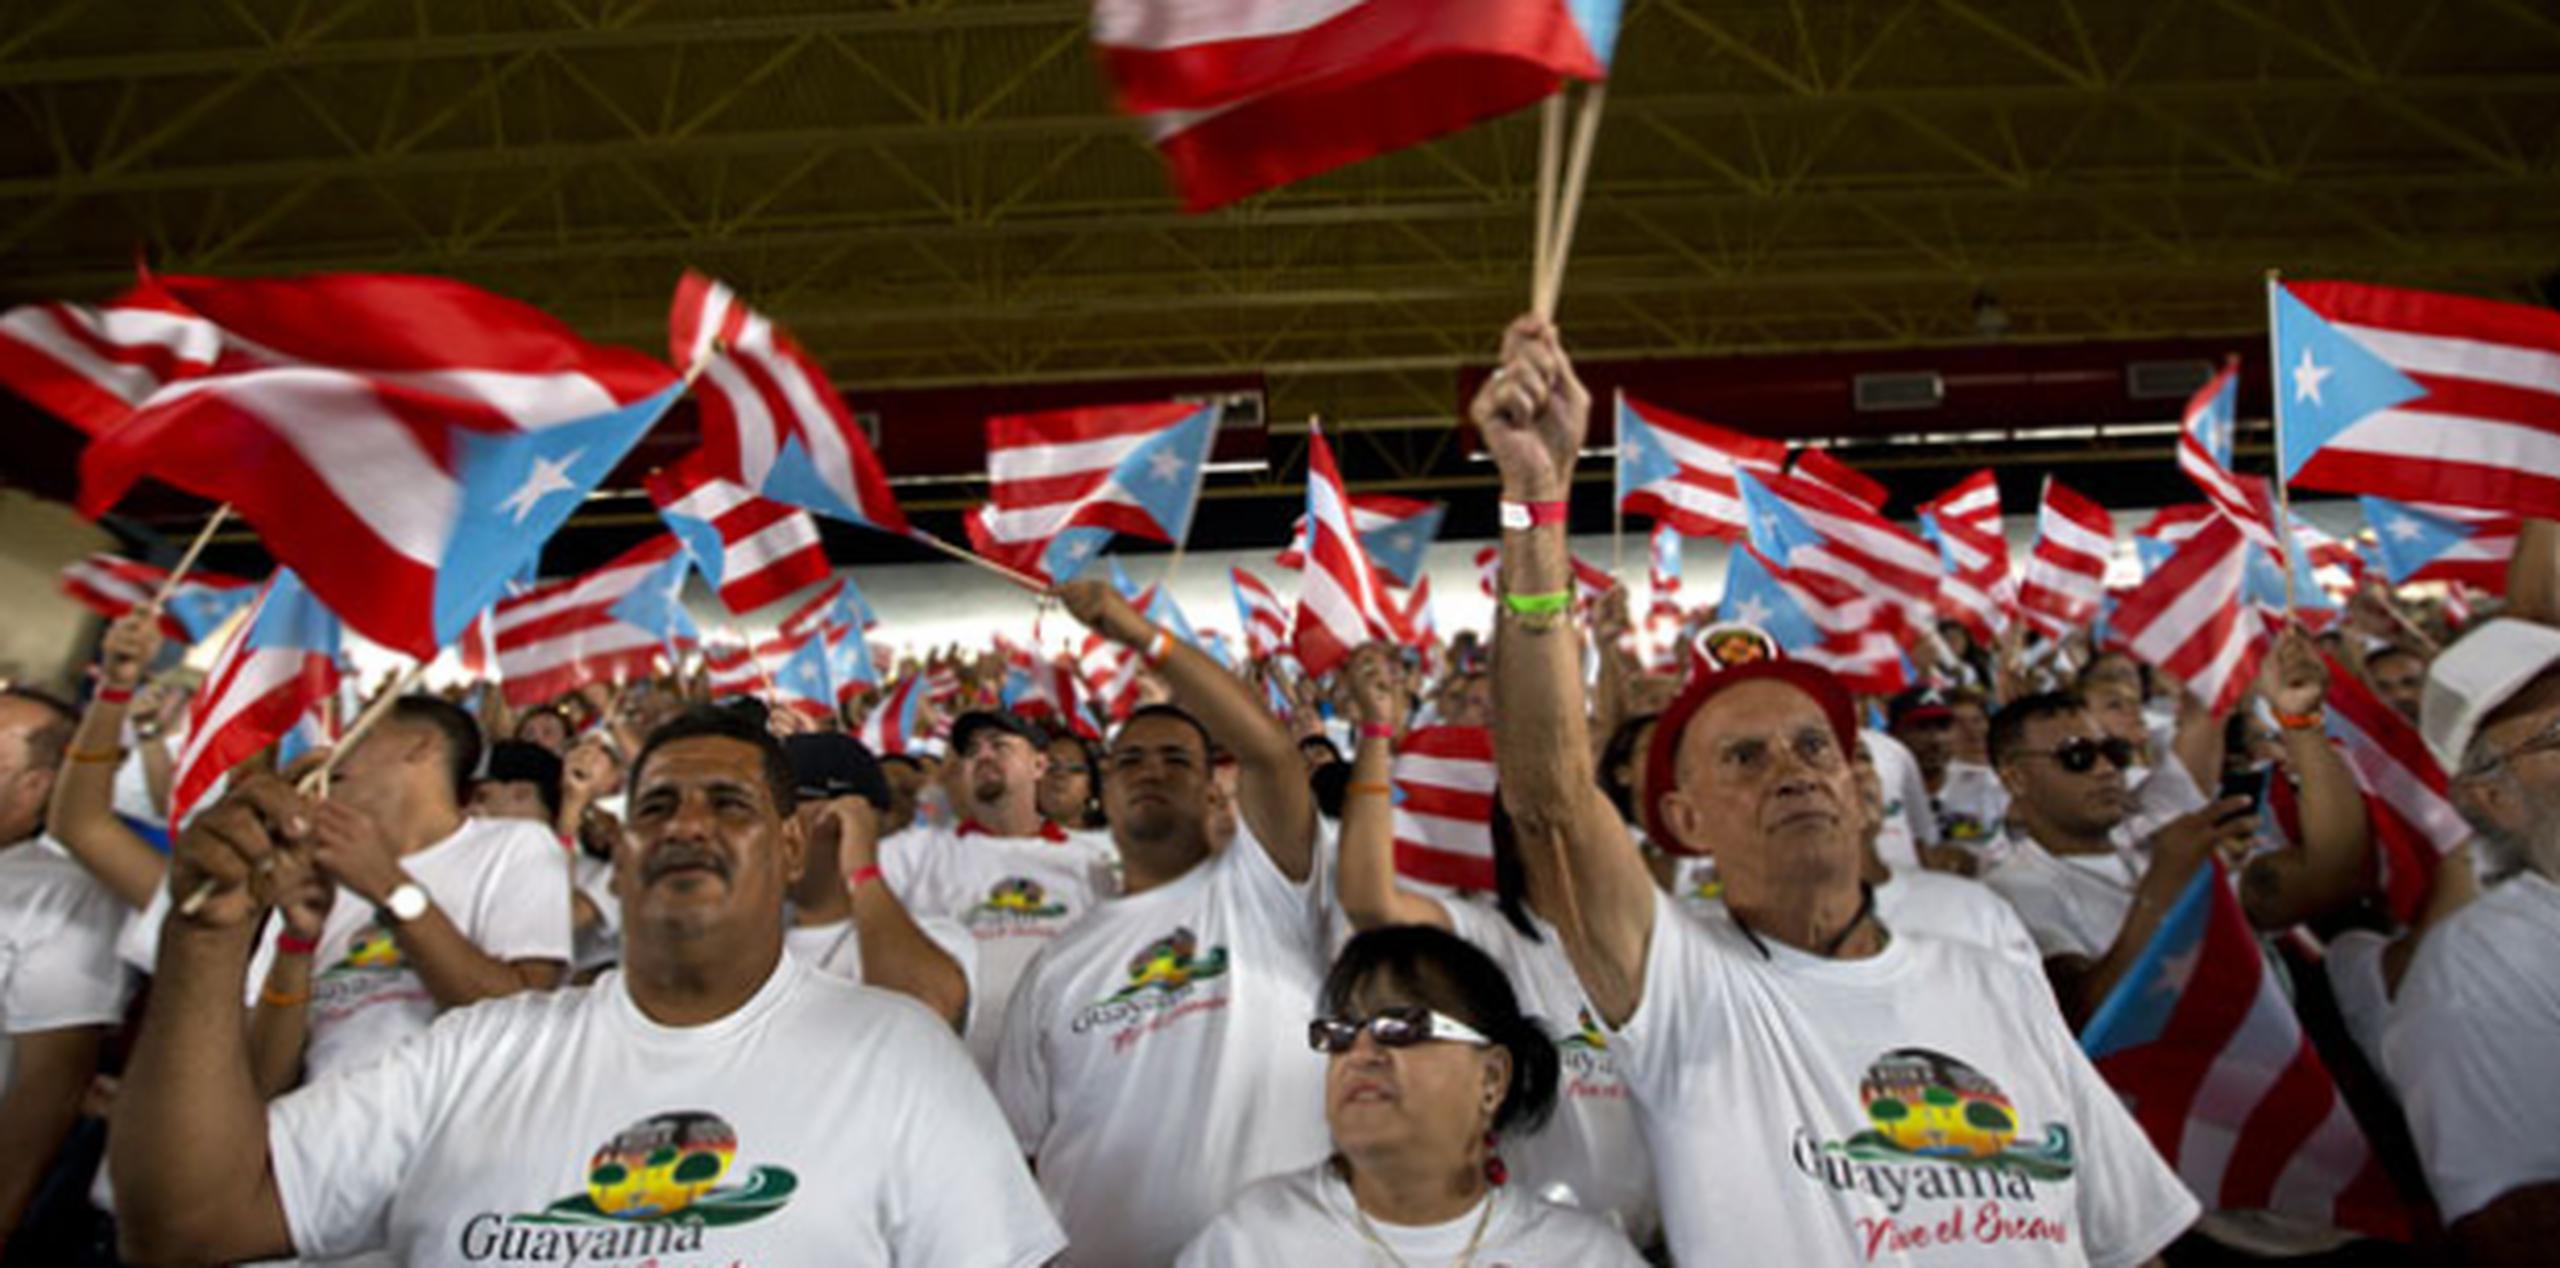 Miles de banderas puertorriqueñas ondearon en el interior del coliseo. (jorge.ramirez@gfrmedia.com)
